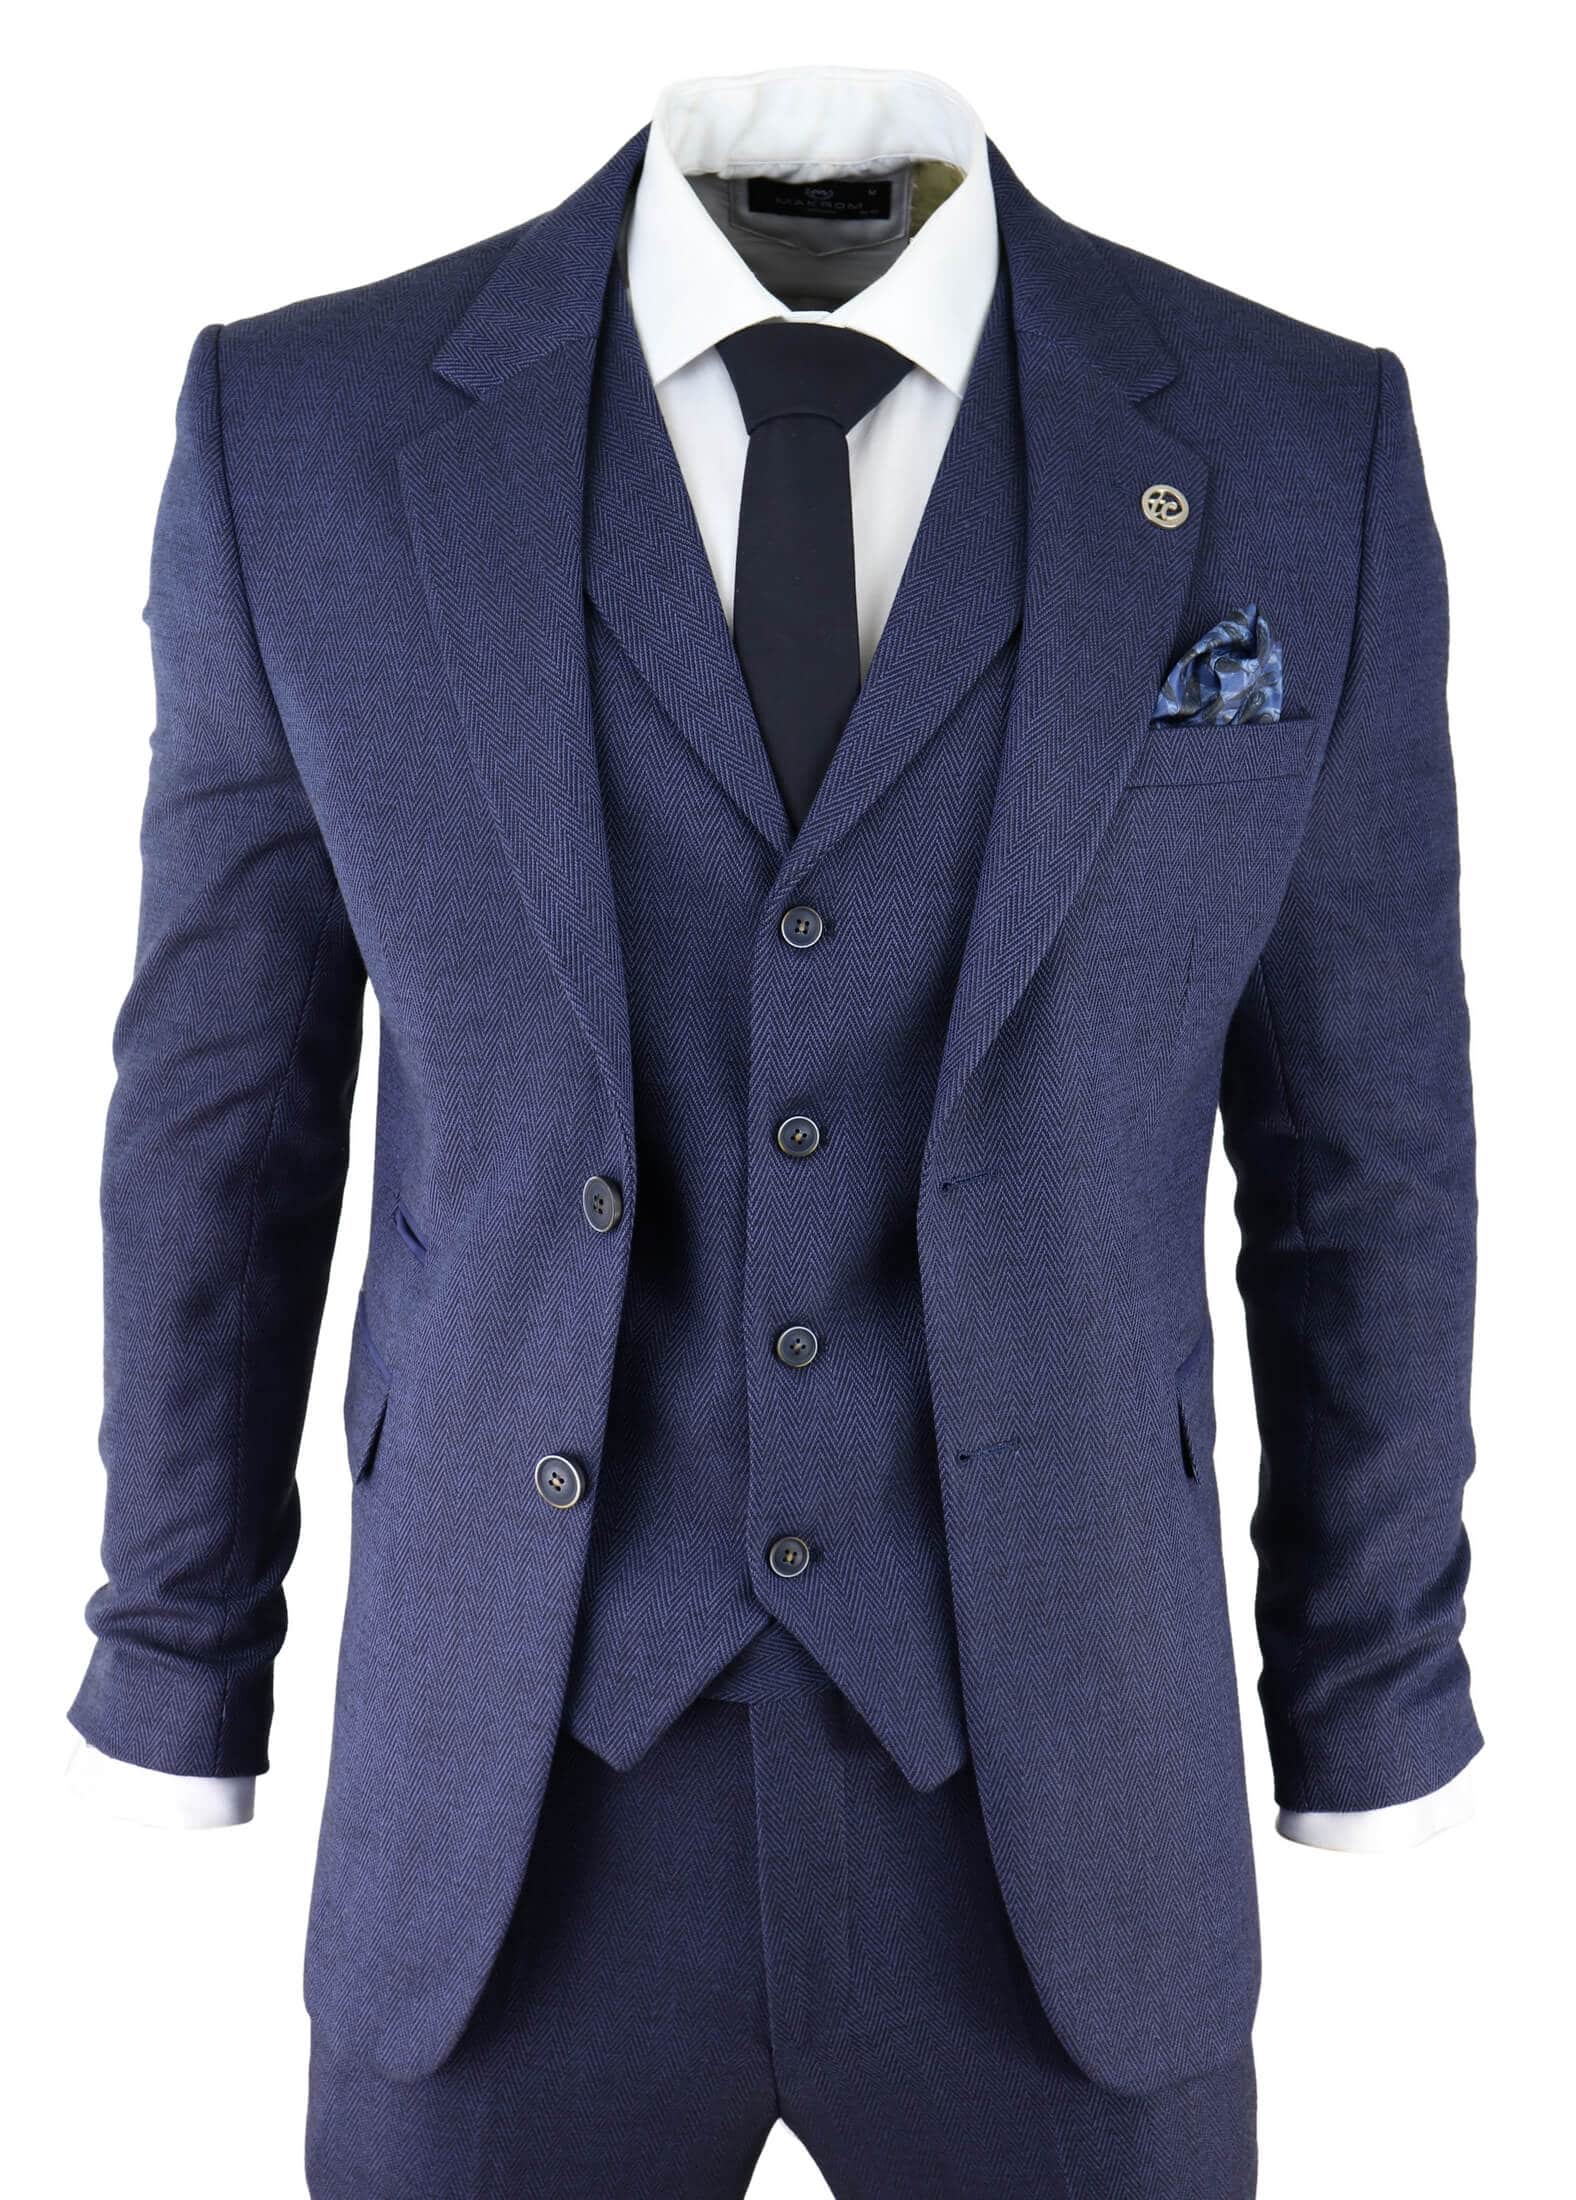 Men's Navy-Blue Herringbone Tweed 3 Piece Suit: Buy Online - Happy ...